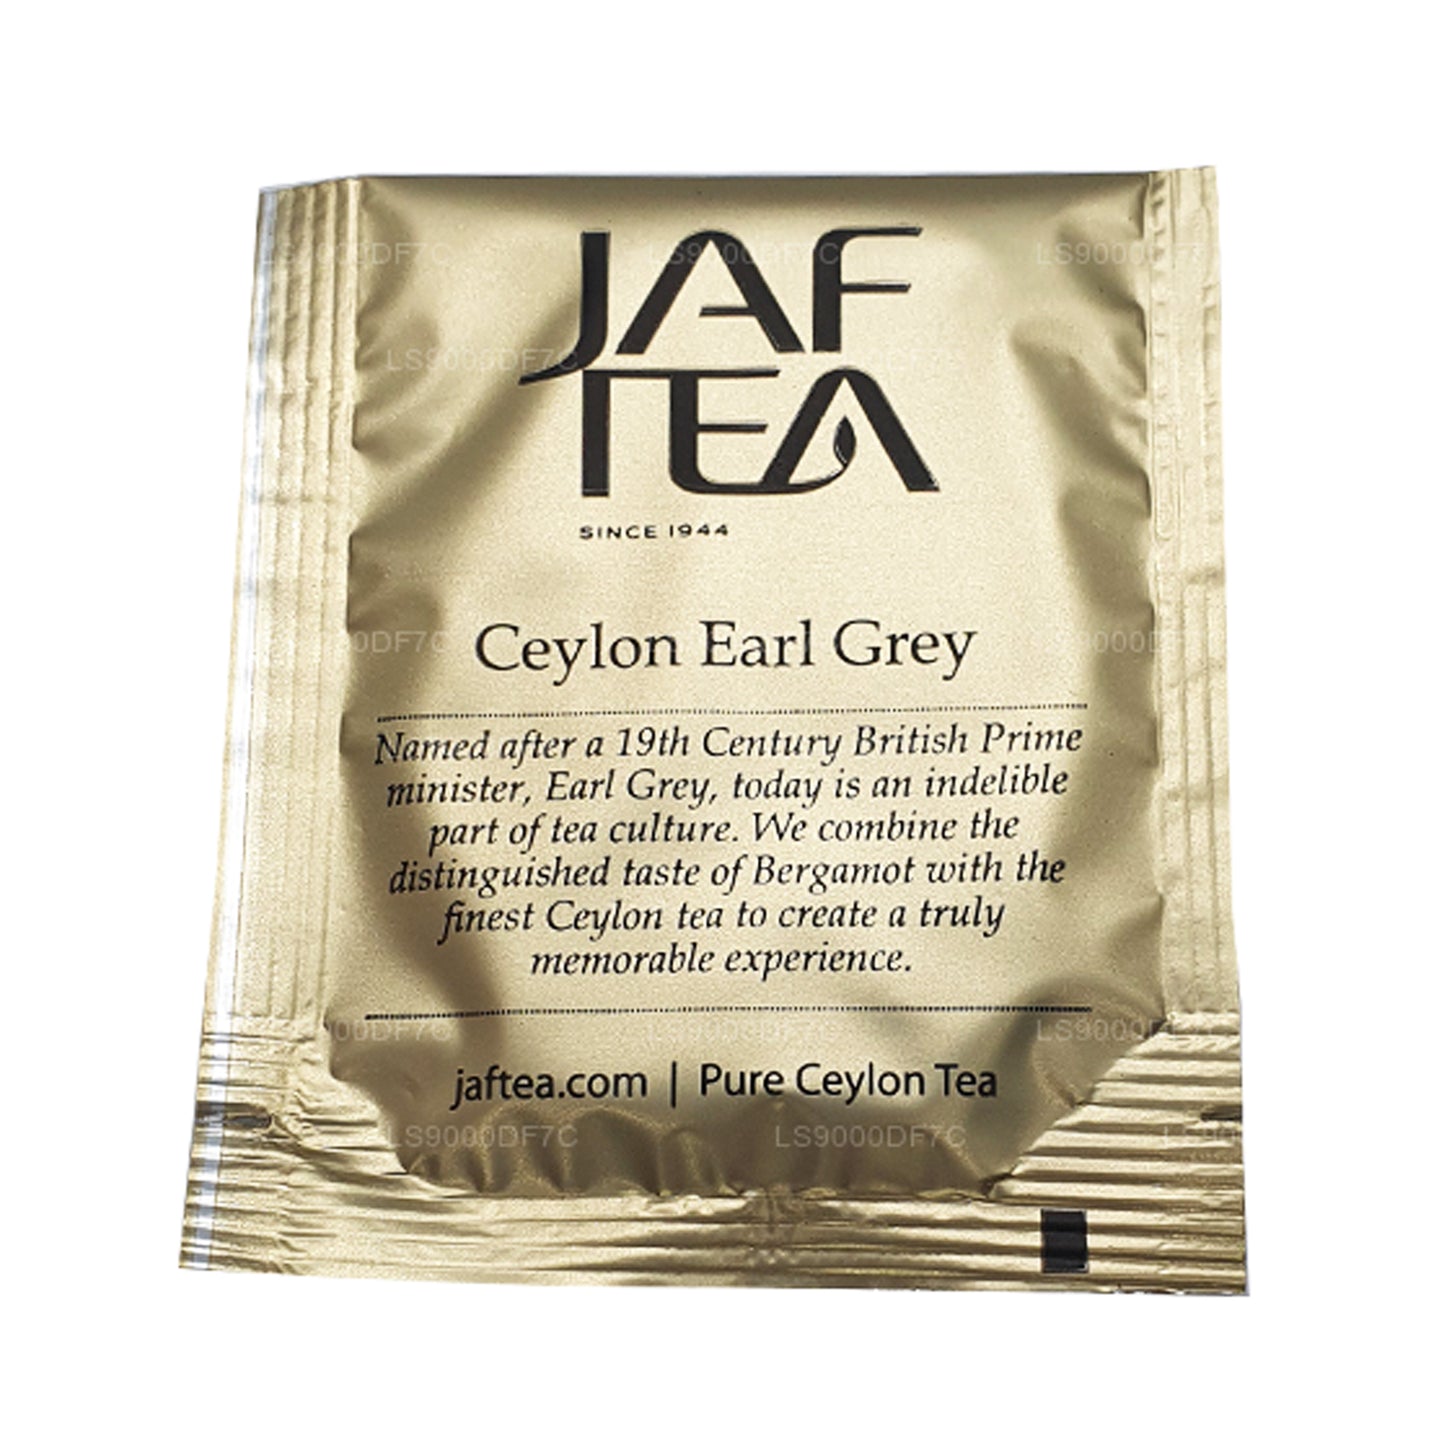 Чистые чаи и настои Jaf Tea (145 г) 80 пакетиков чая